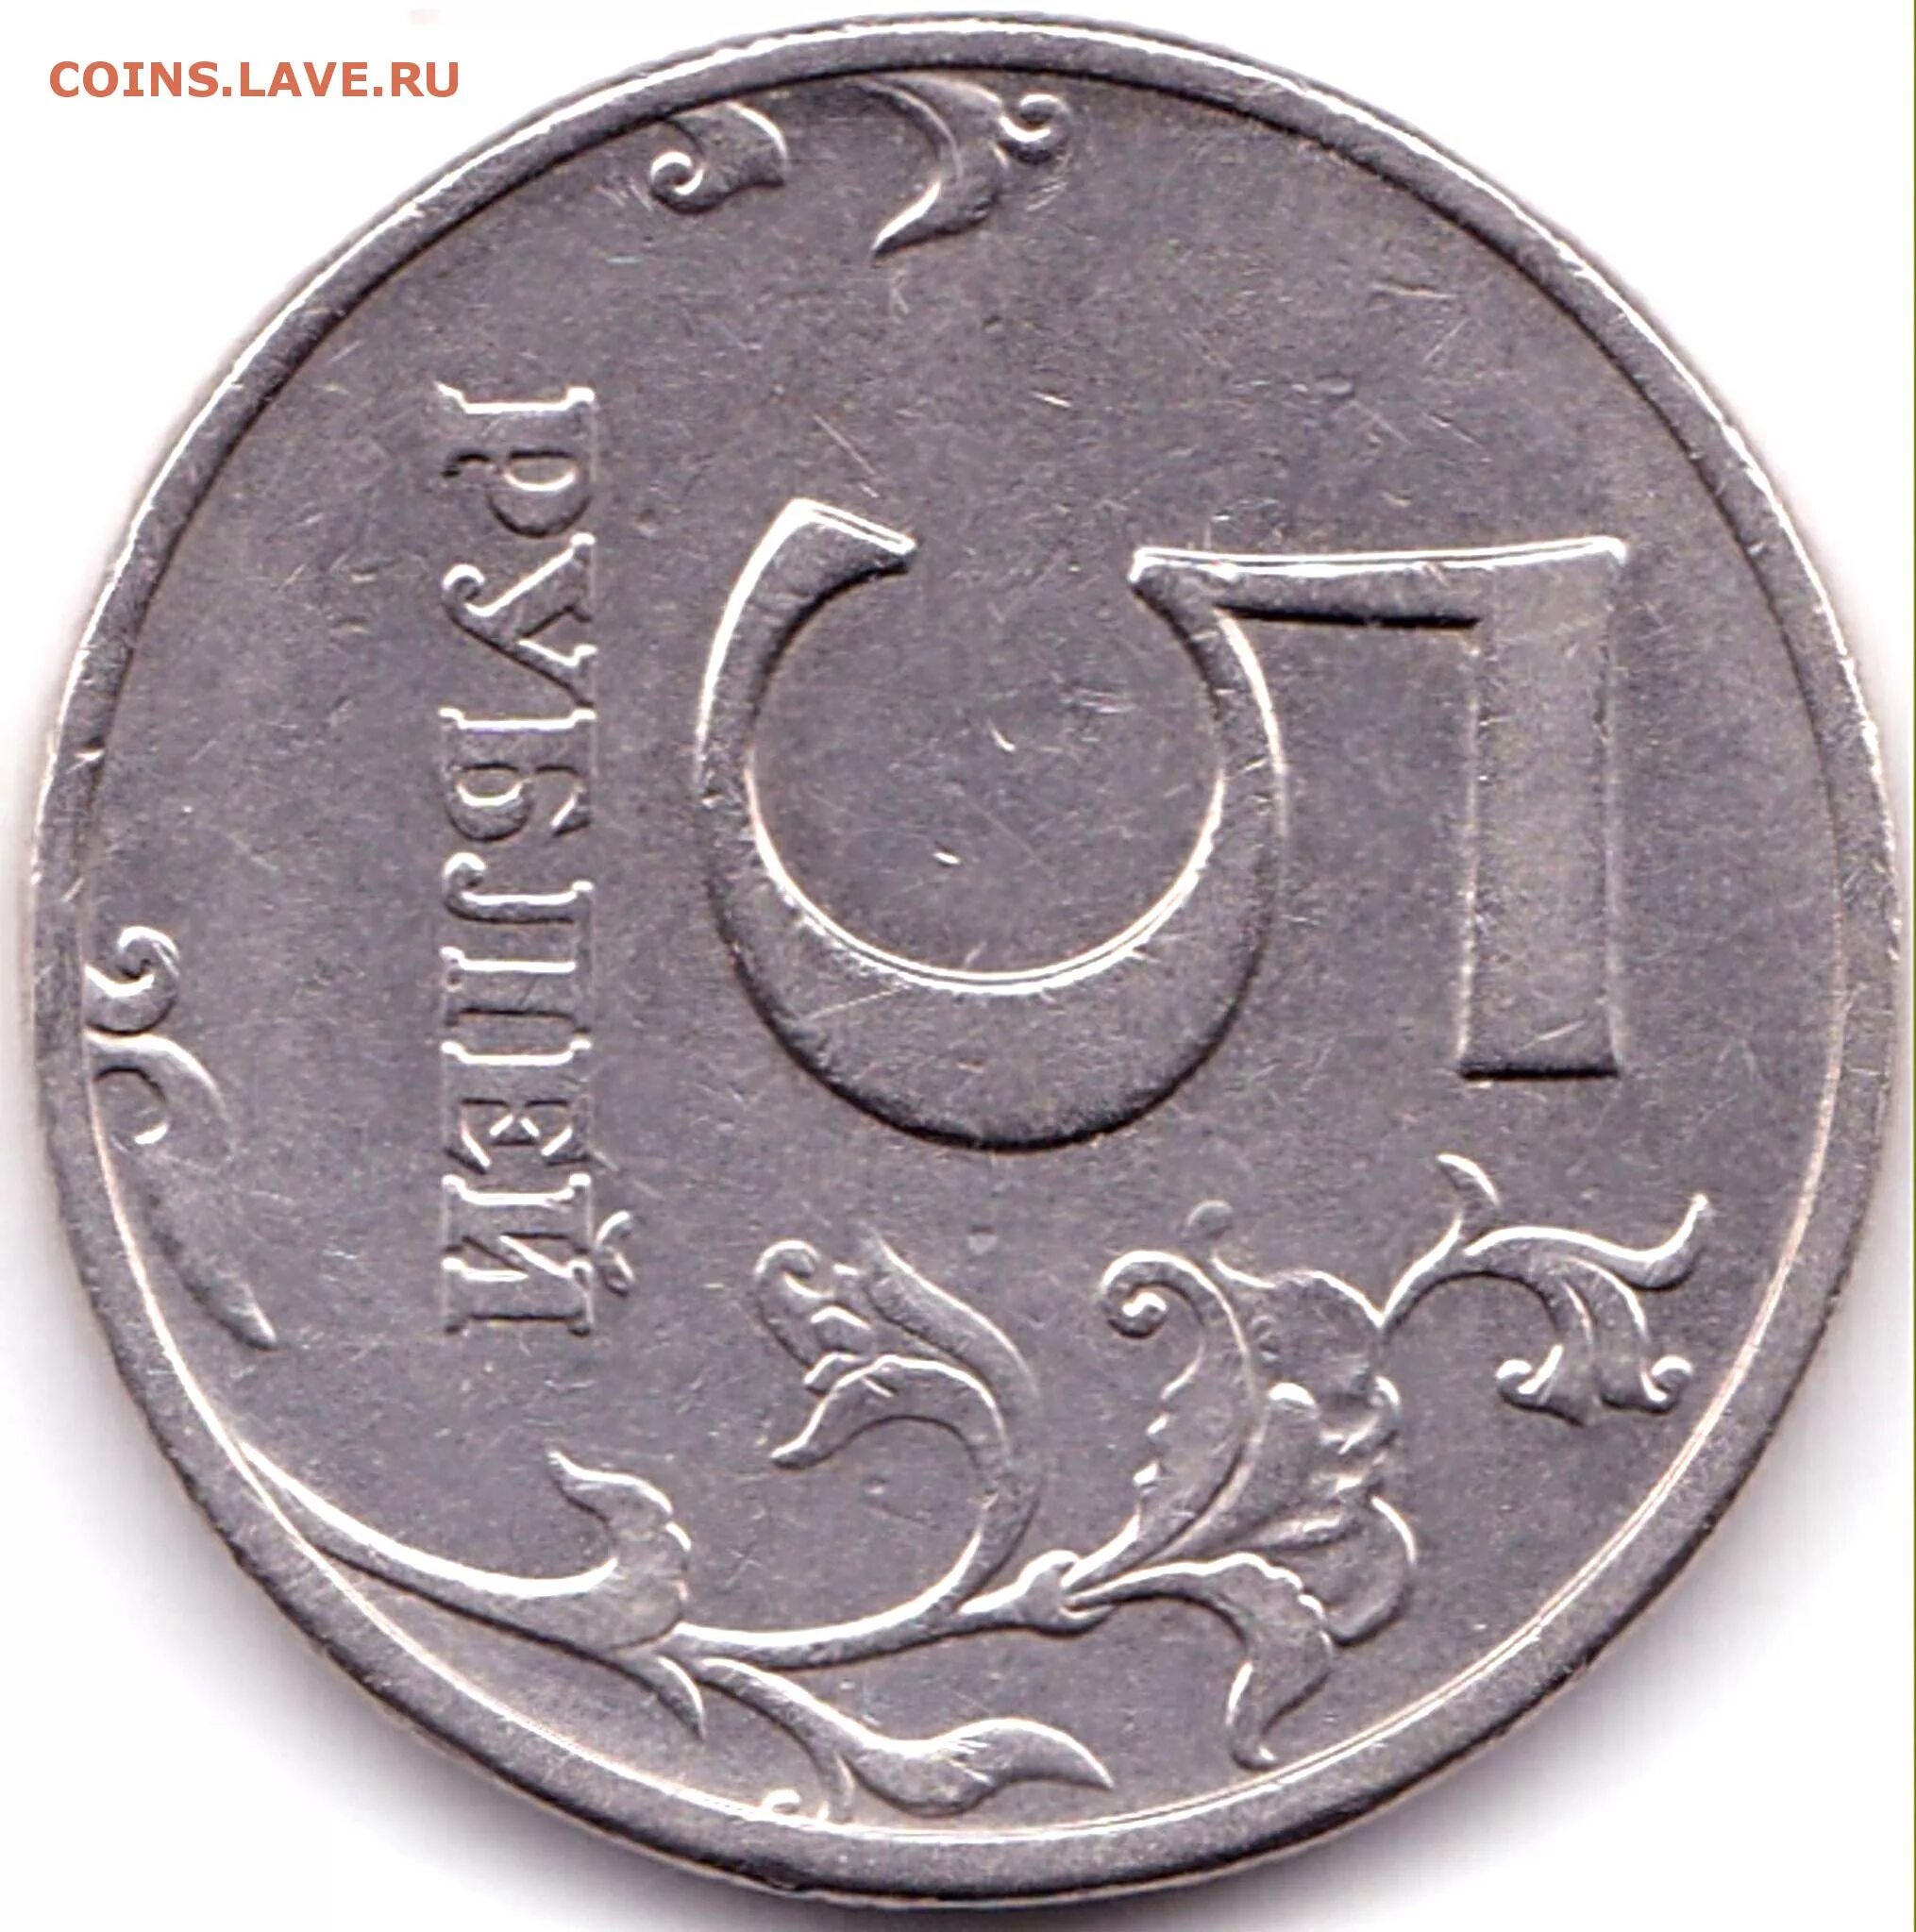 5 рублей 17 года цена. 5 Рублей 2008 ММД. 5 Рублей 2008 редкие. Покажи на фото 5 рублей 2008 года редкую. 5 Рублей 2008 года цена.